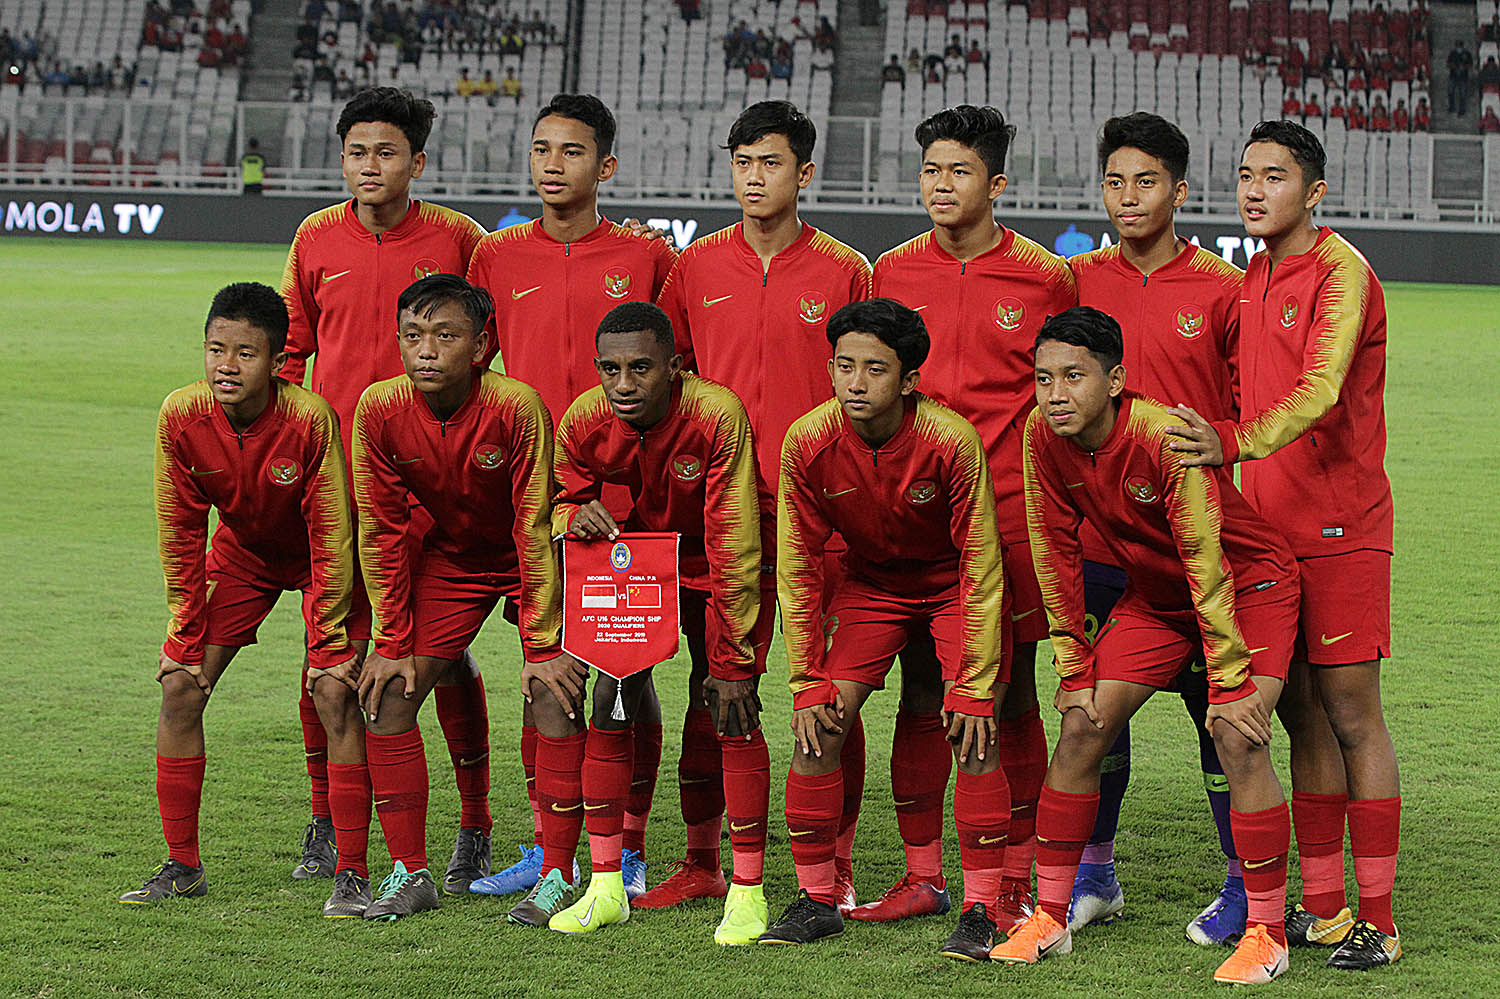 AFC Rilis Jam Laga Piala Asia U-16 2020, Ini Jadwal Main Timnas Indonesia U-16